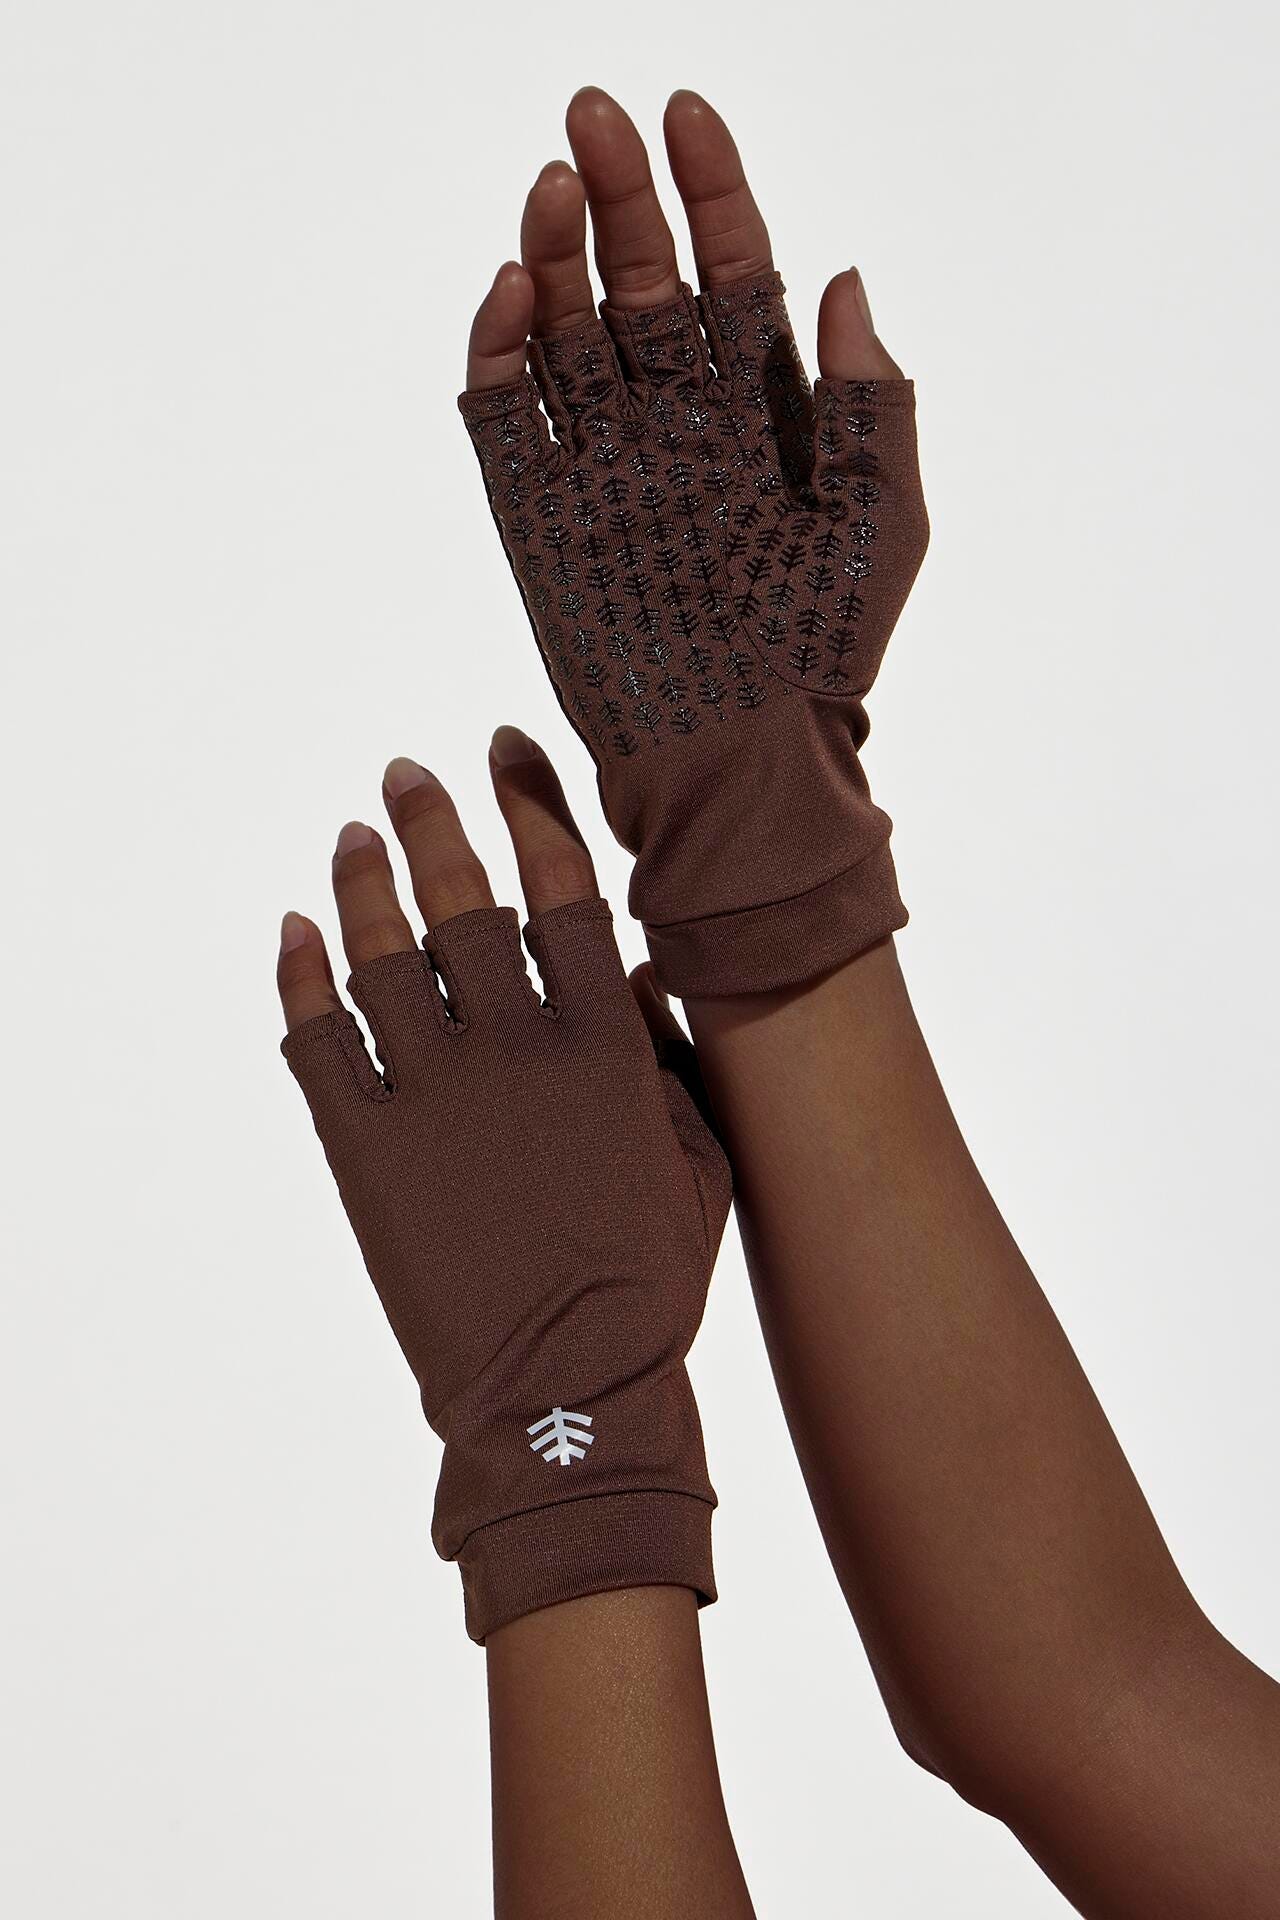 Coolibar Ouray UV Fingerless Sun Gloves UPF 50+, White / XL